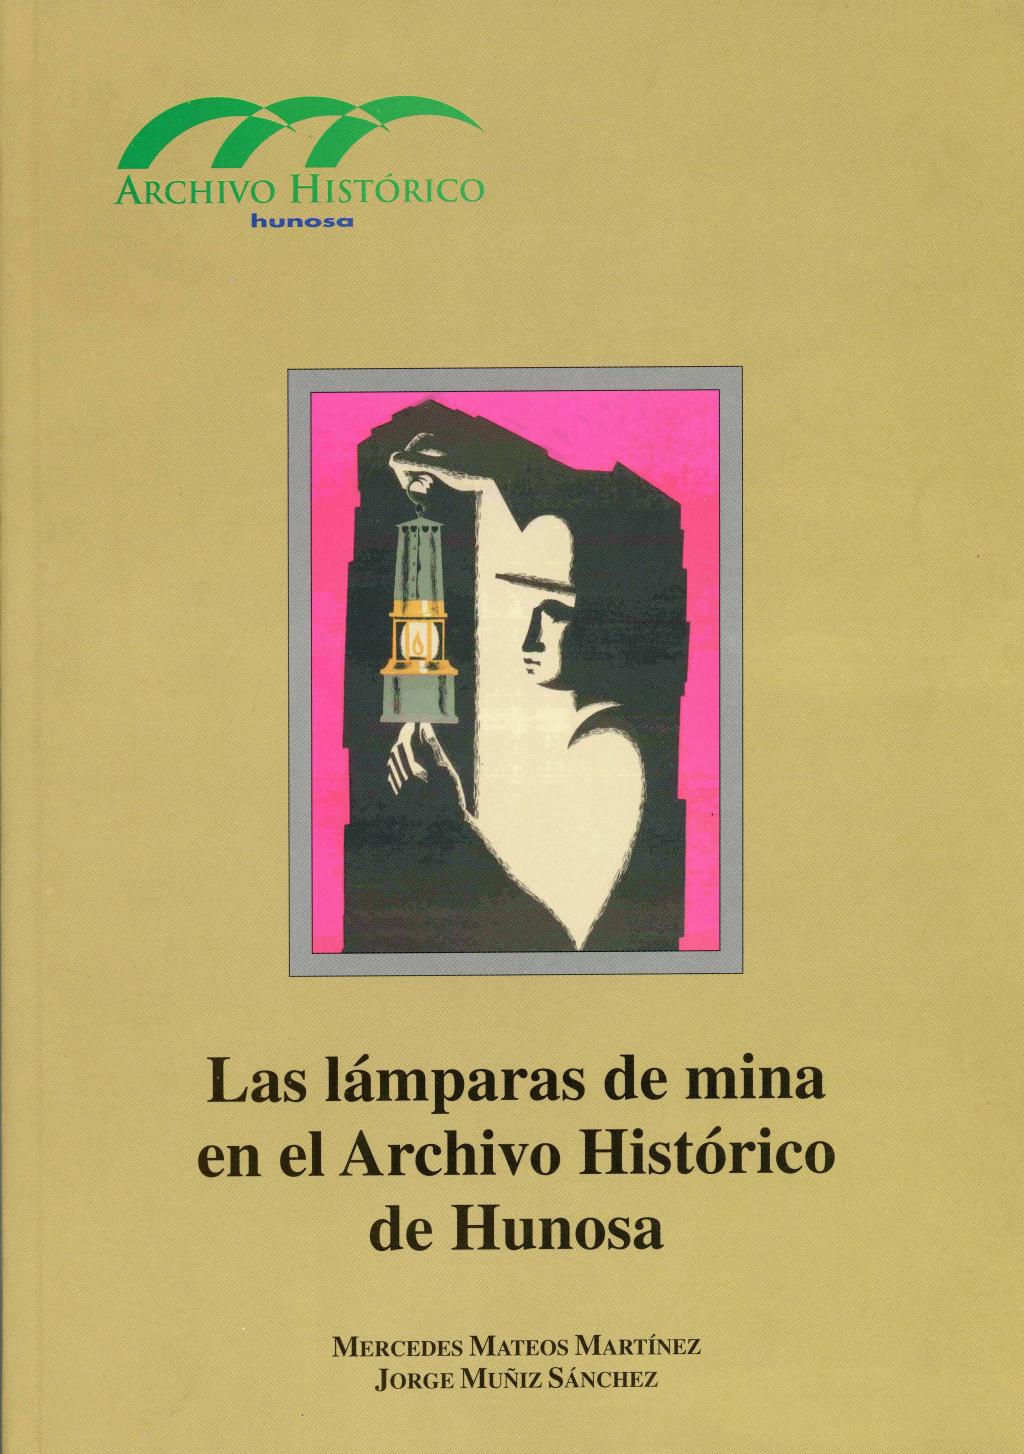 Libros Las lámparas de mina en el Archivo Histórico Hunosa Pozo Fondón